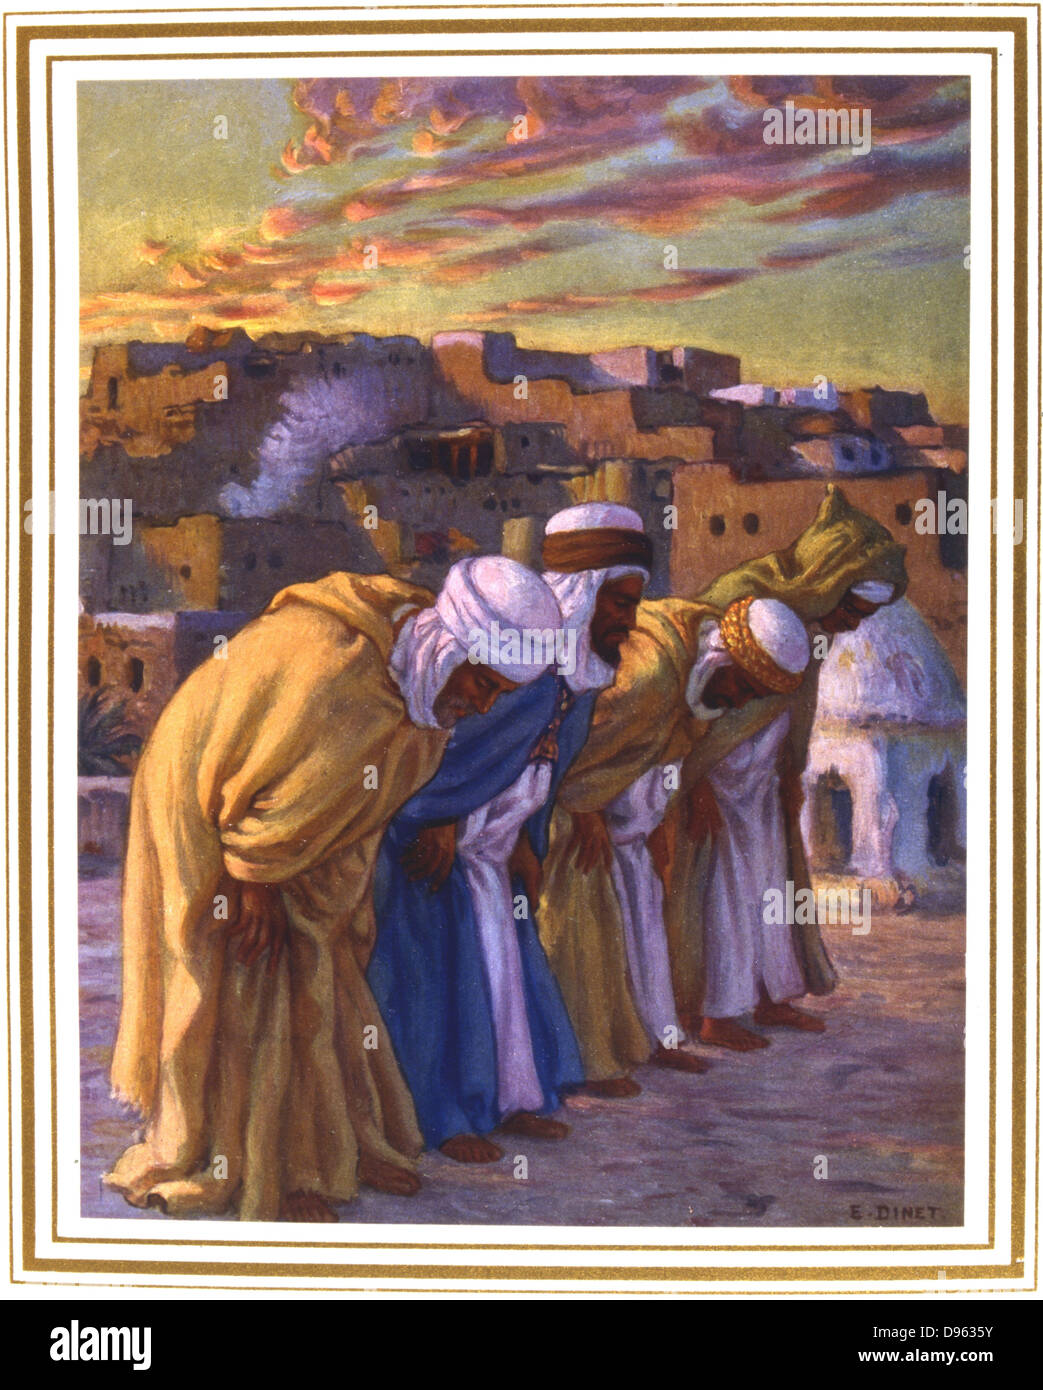 Inclinazione in preghiera. Illustrazione di E. Dinet (1861-1929) per la Vie de Mohammed, prophete d'Allah. Foto Stock